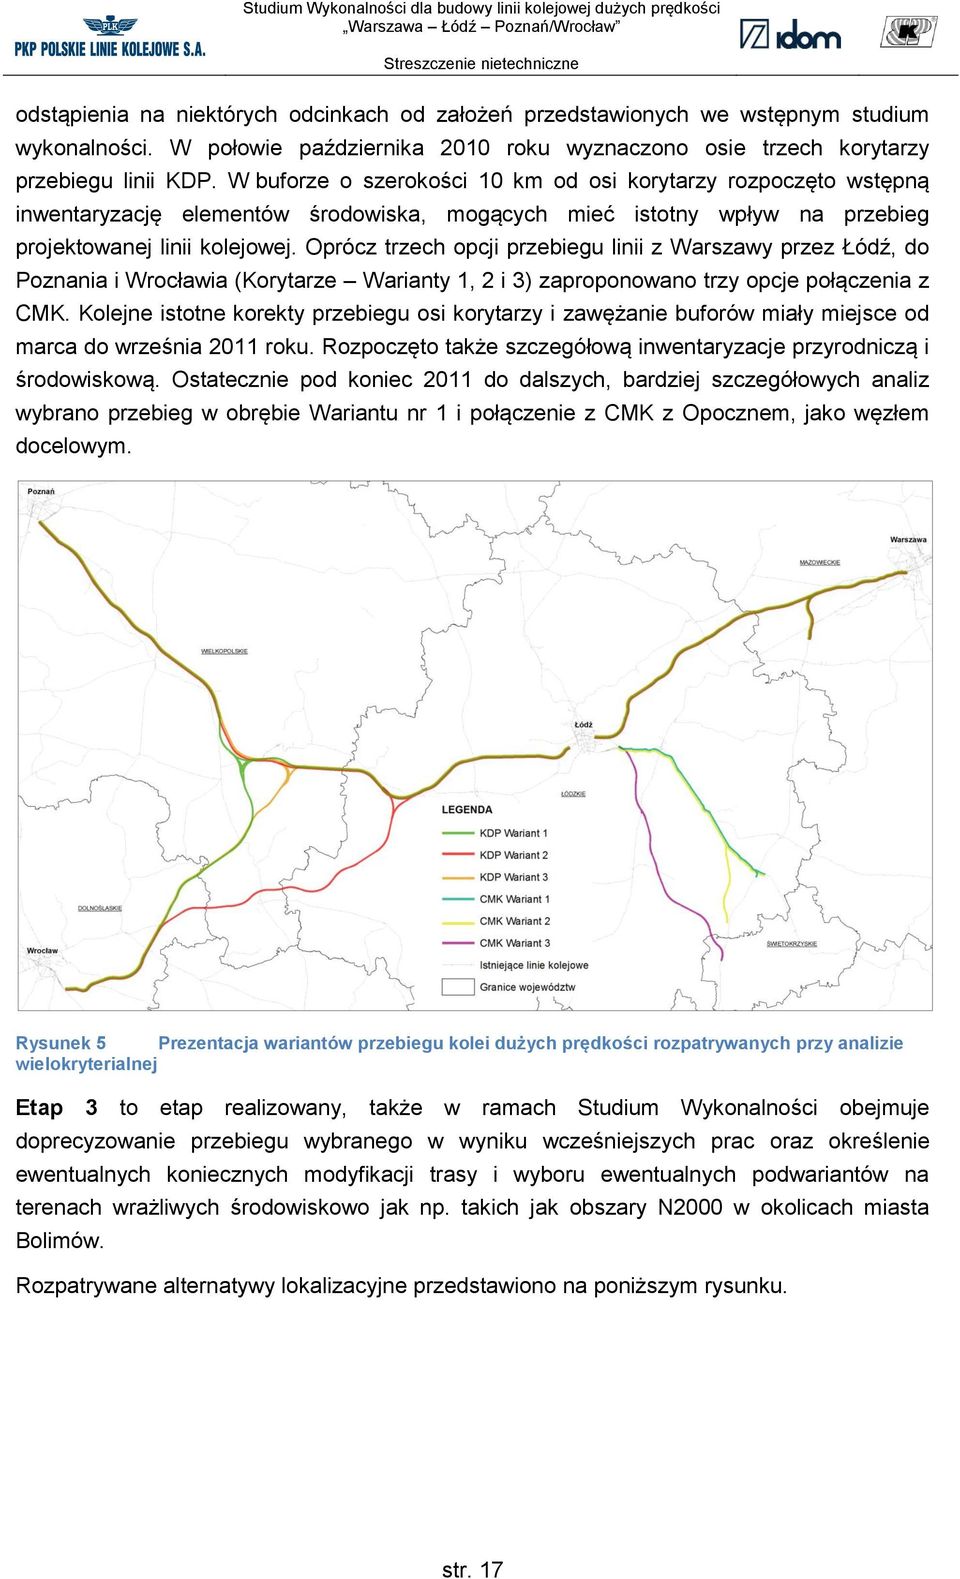 Oprócz trzech opcji przebiegu linii z Warszawy przez Łódź, do Poznania i Wrocławia (Korytarze Warianty 1, 2 i 3) zaproponowano trzy opcje połączenia z CMK.